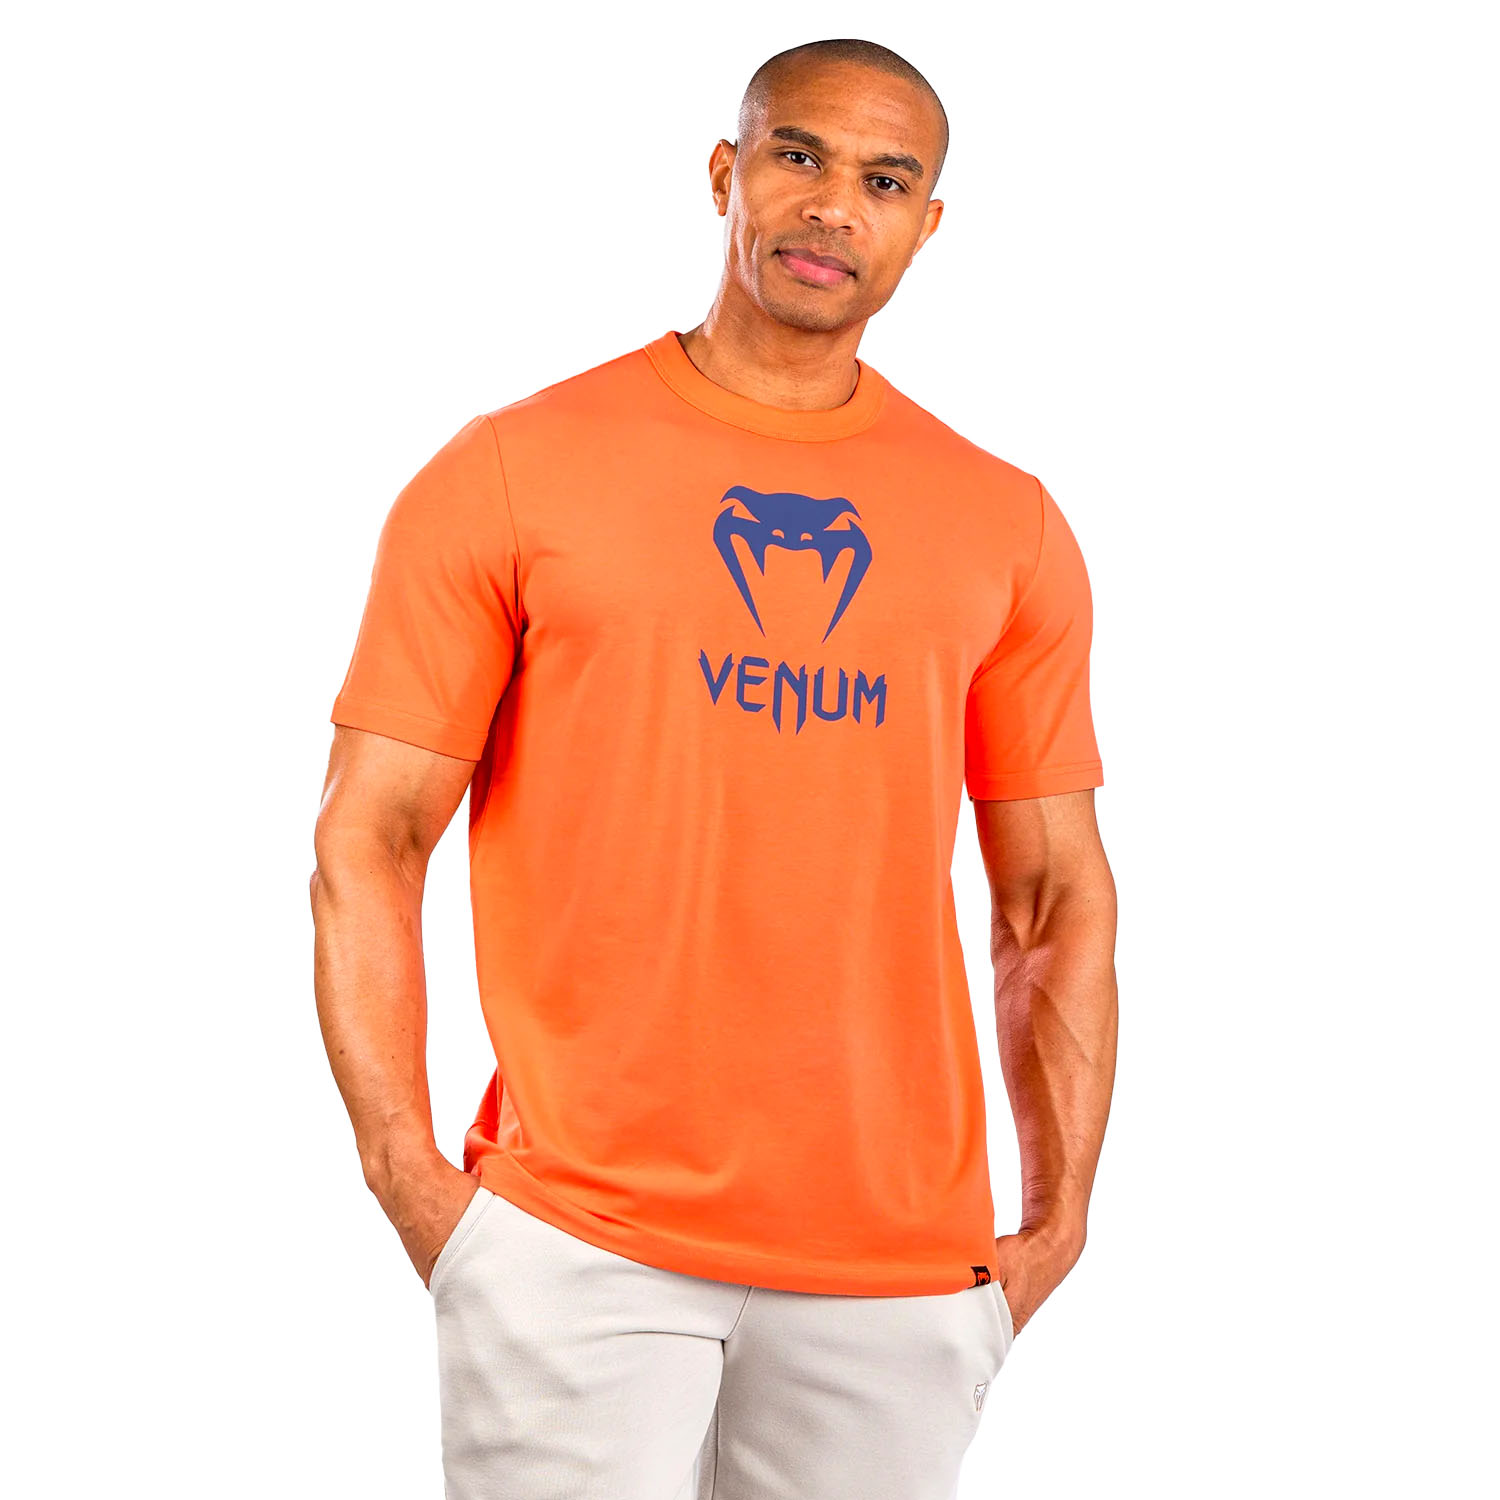 VENUM T-Shirt, Classic, orange-navy